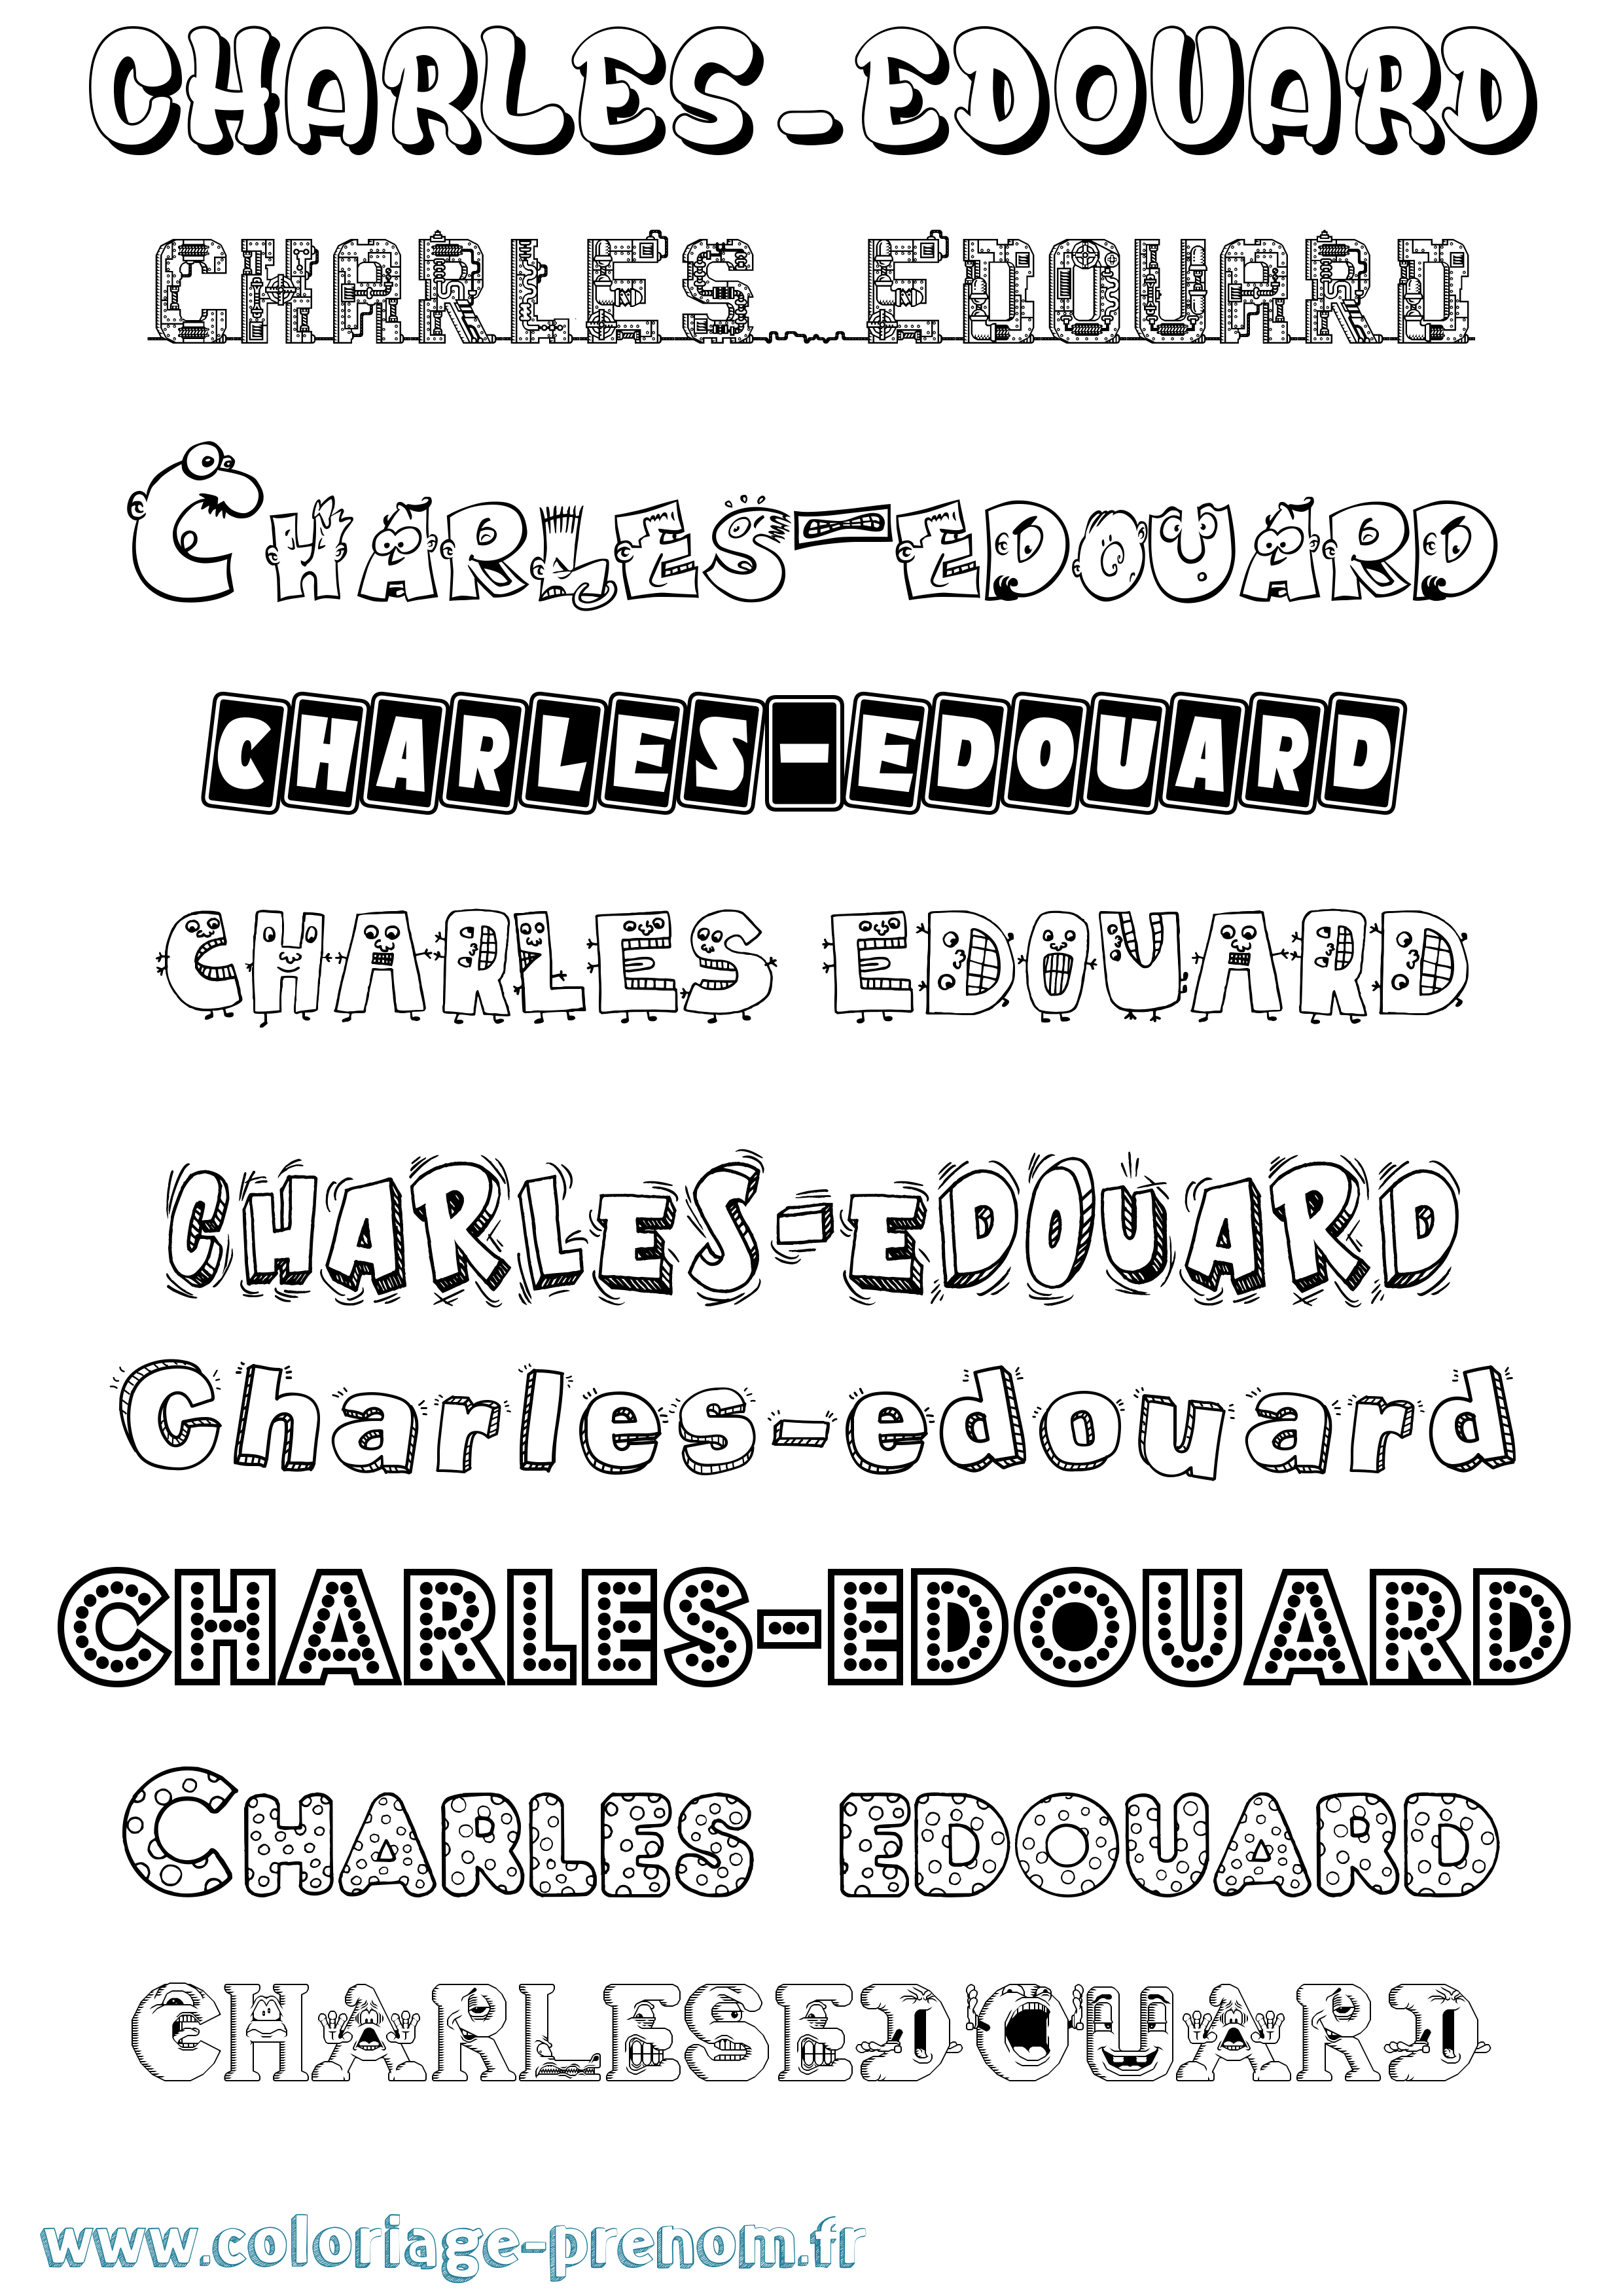 Coloriage prénom Charles-Edouard Fun